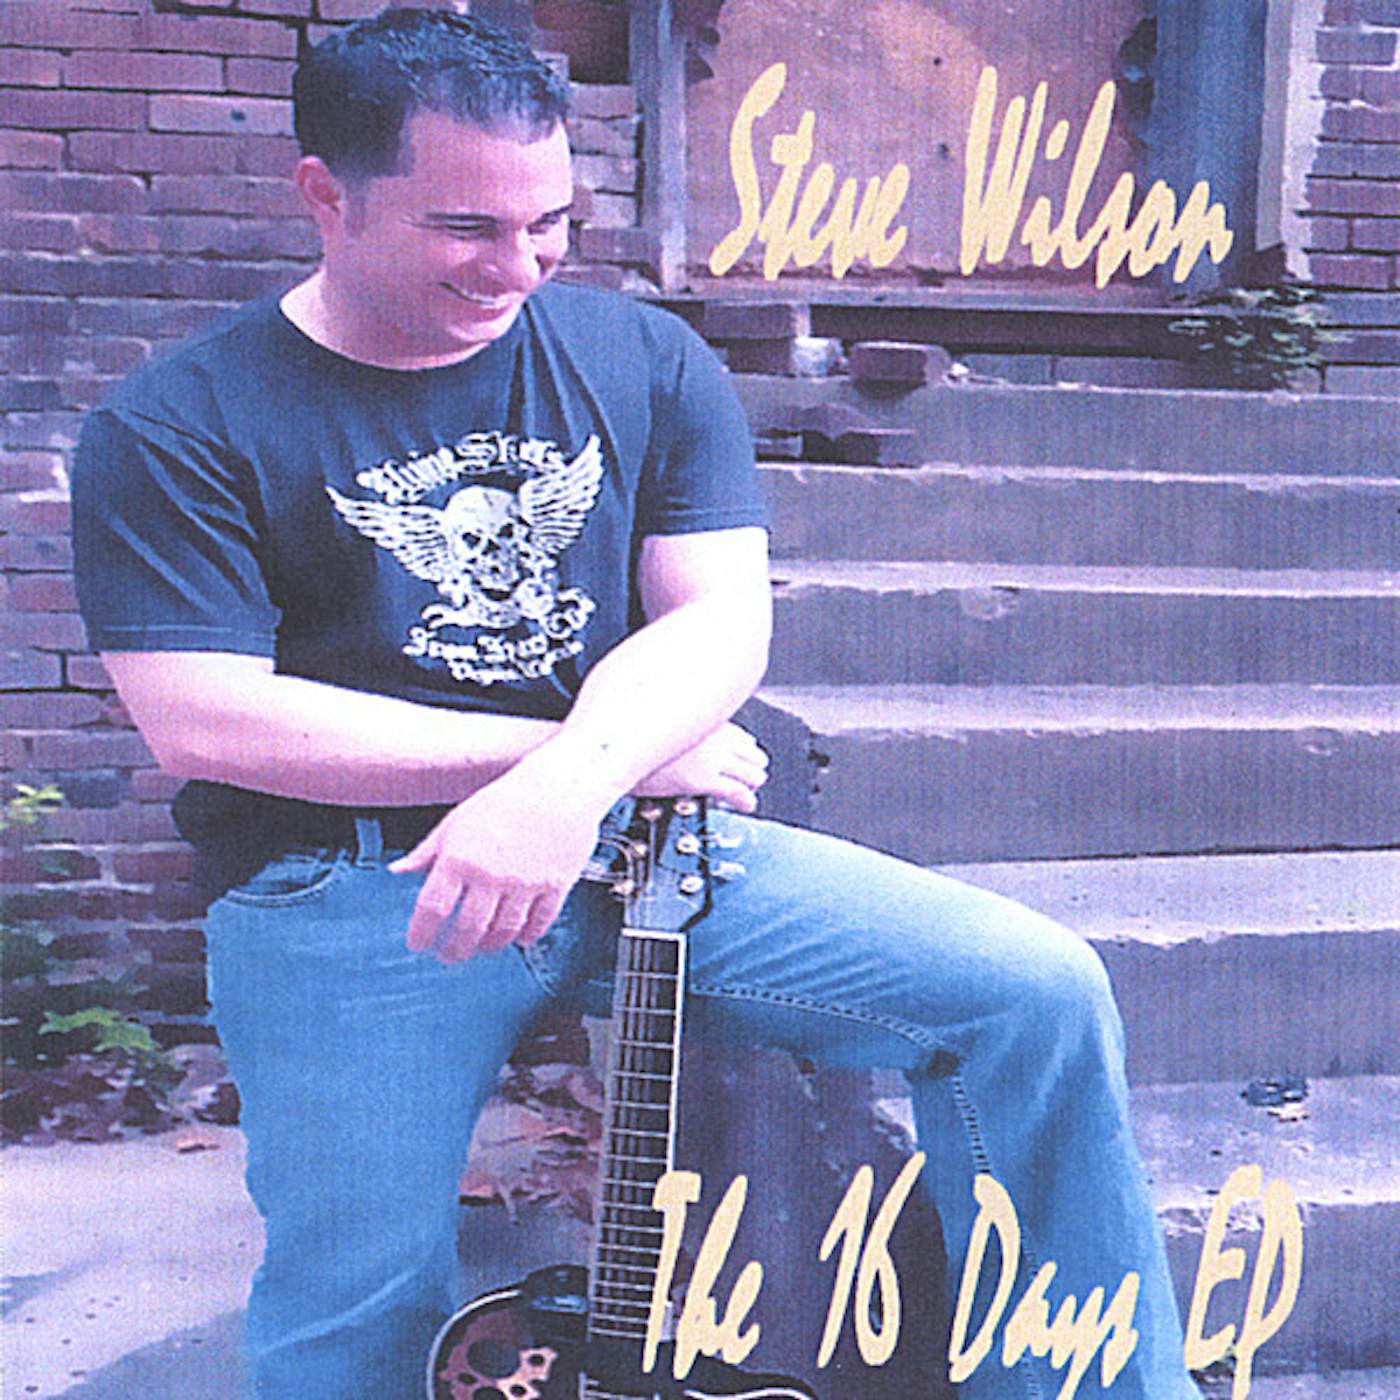 Steve Wilson 16 DAYS EP CD